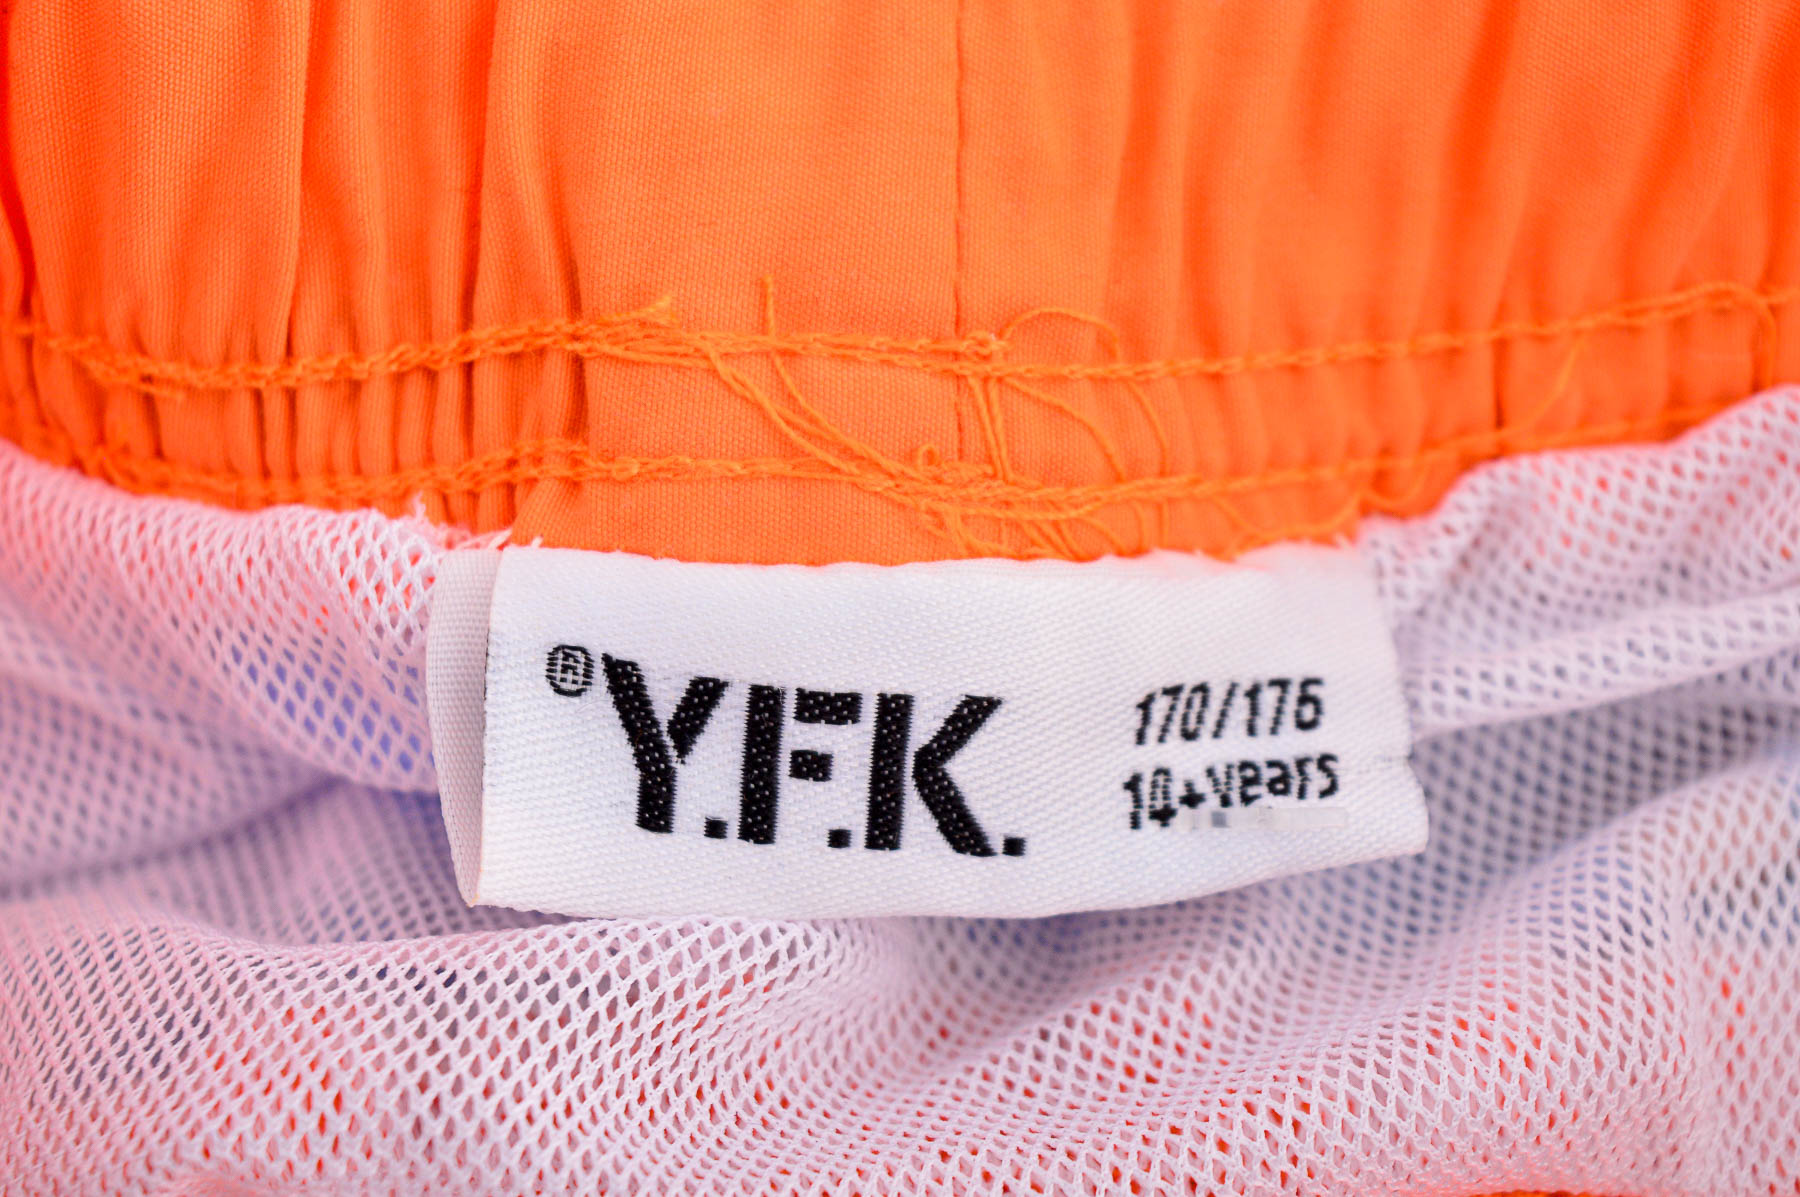 Boy's shortsта - Y.F.K - 2